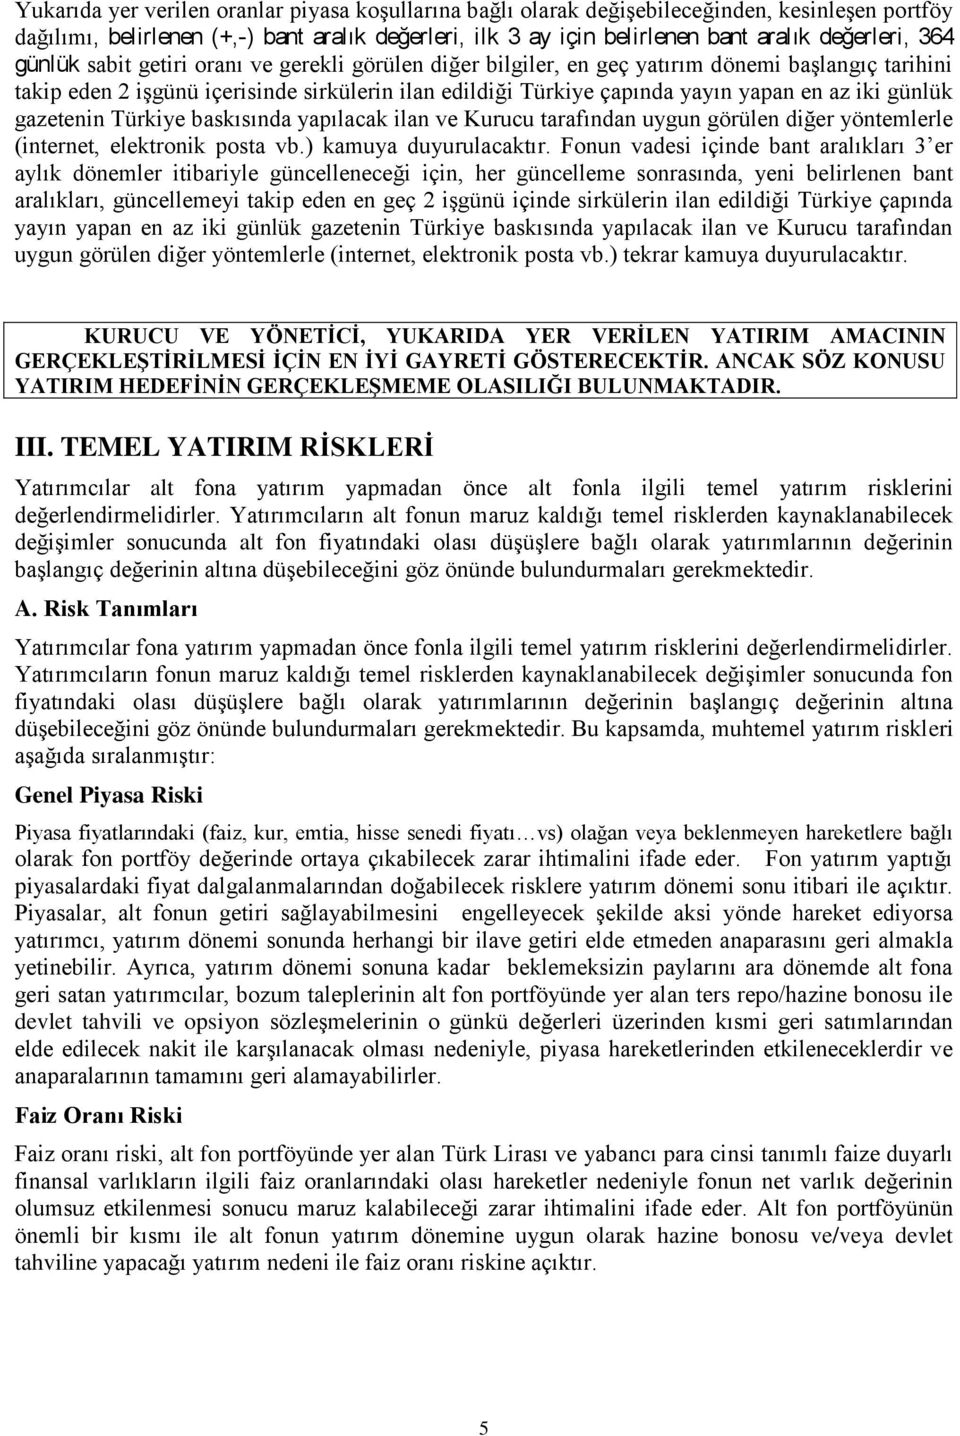 günlük gazetenin Türkiye baskısında yapılacak ilan ve Kurucu tarafından uygun görülen diğer yöntemlerle (internet, elektronik posta vb.) kamuya duyurulacaktır.